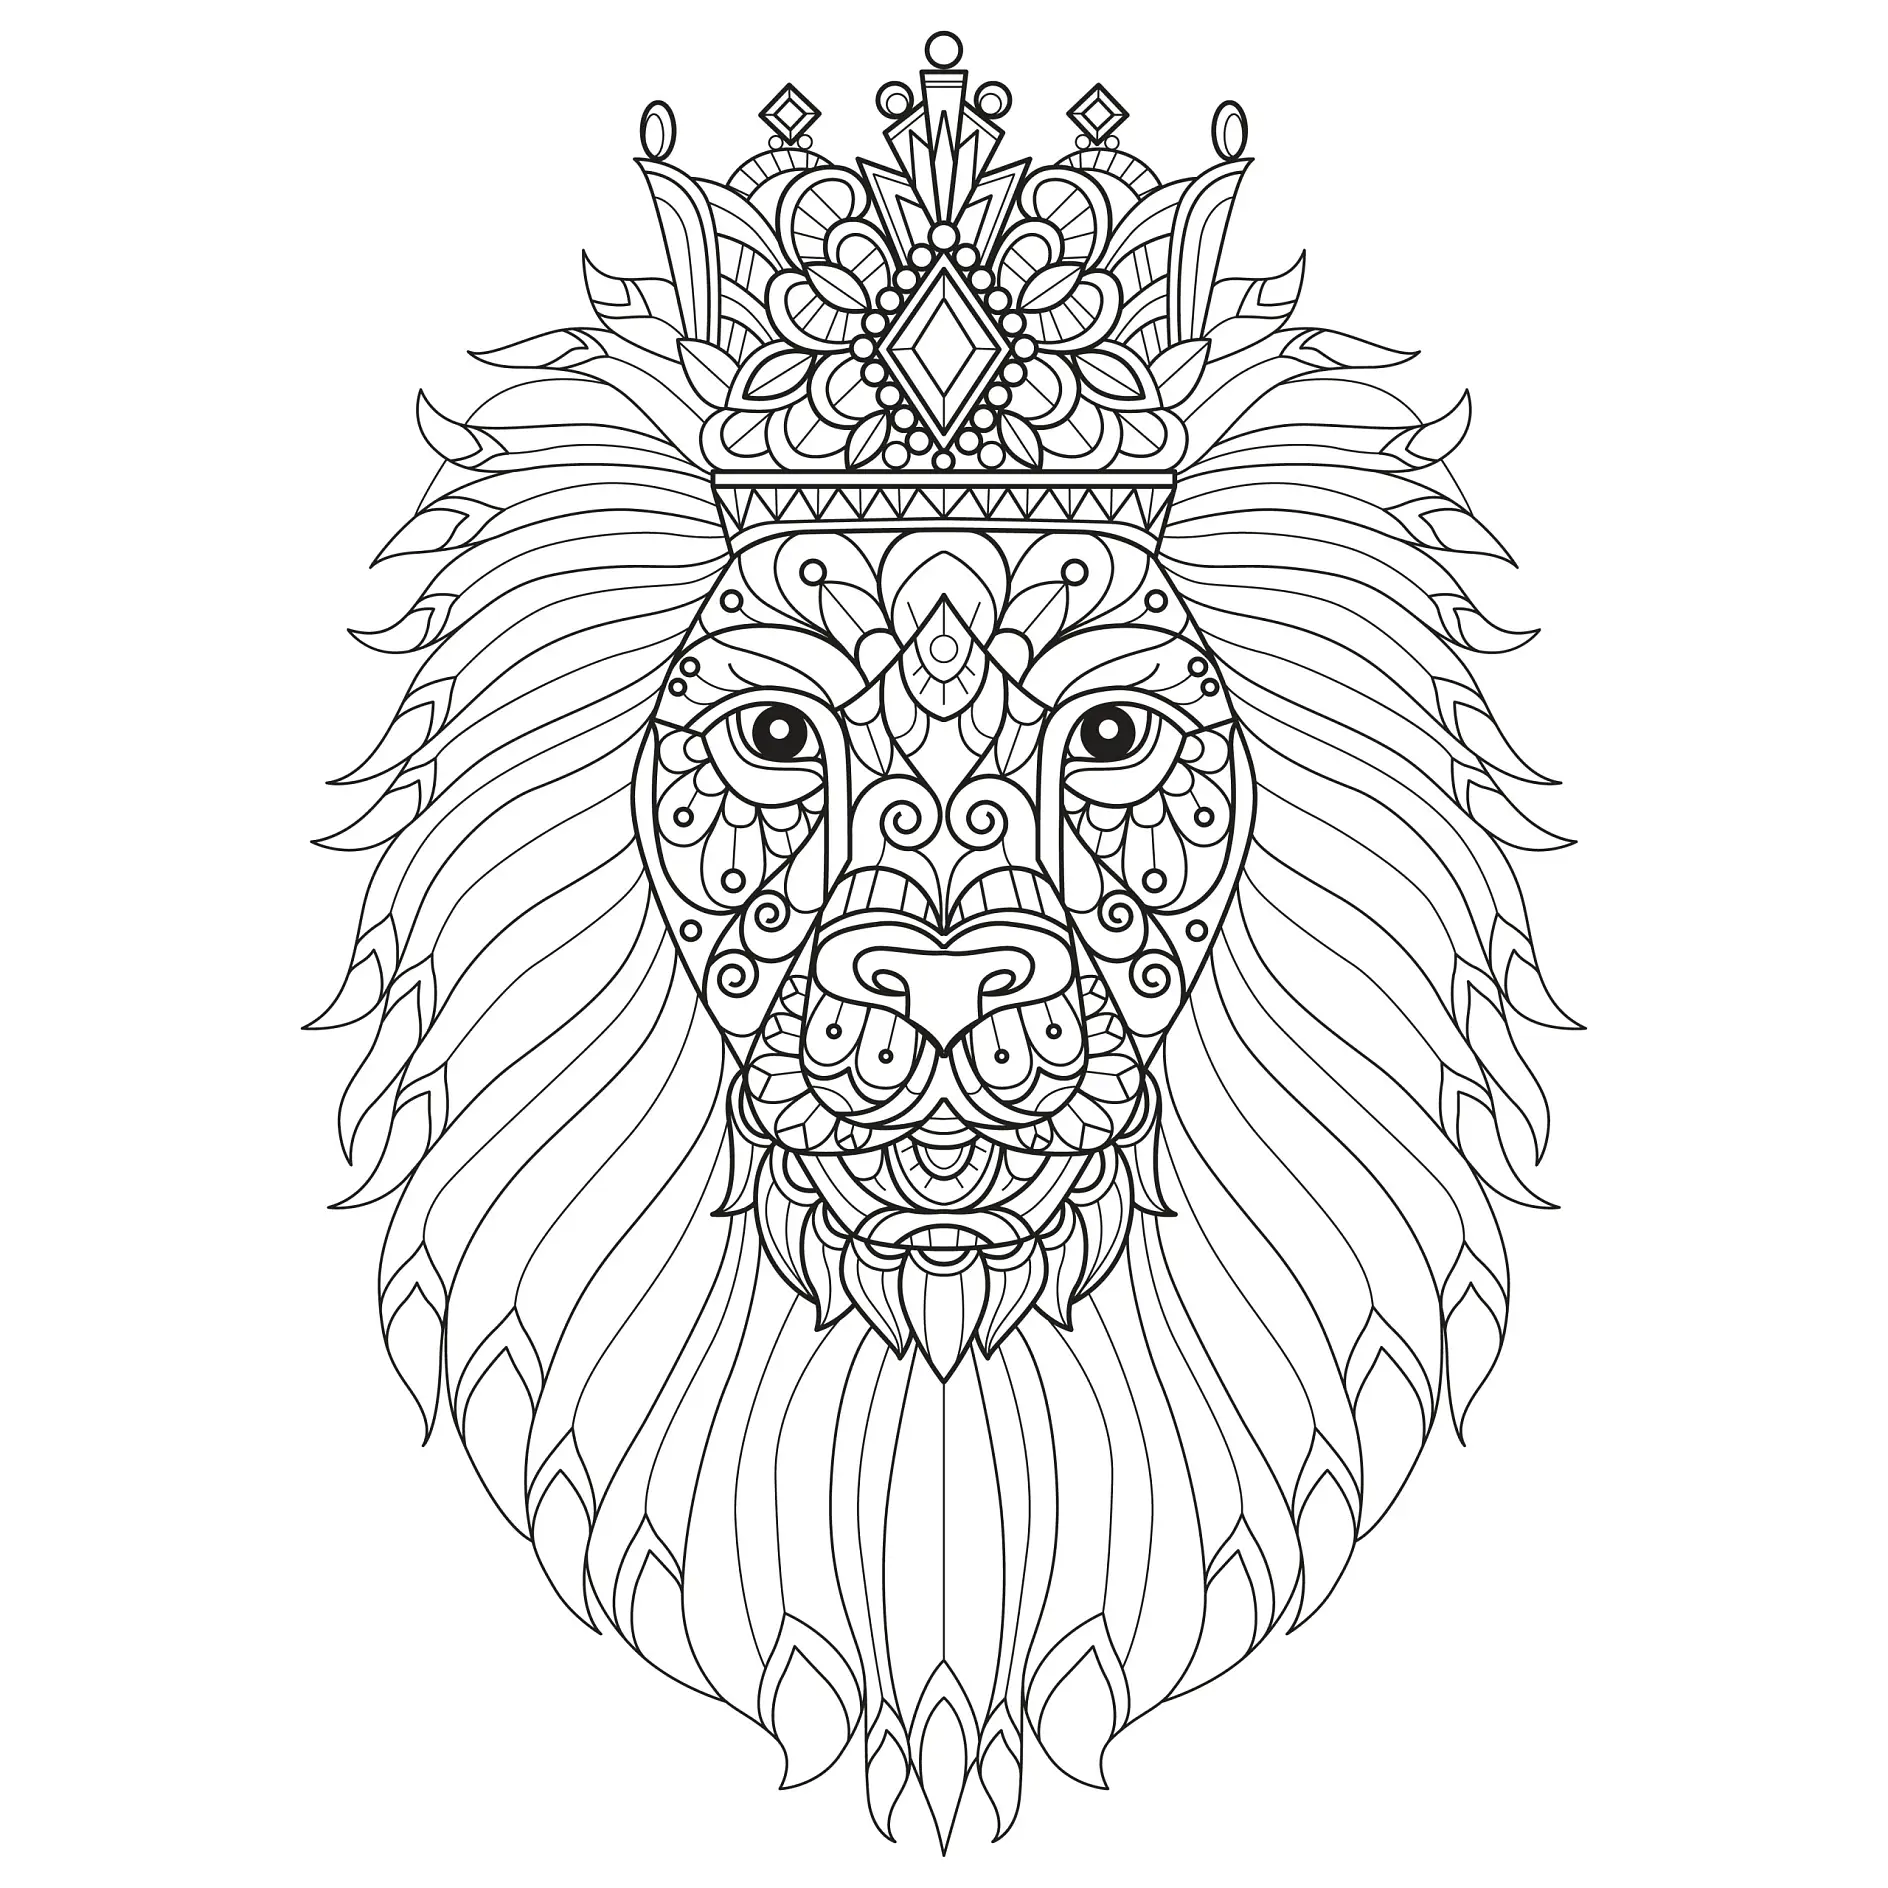 Ausmalbild Mandala mit Löwenkopf und Krone mit detailreichen und symmetrischen Mustern